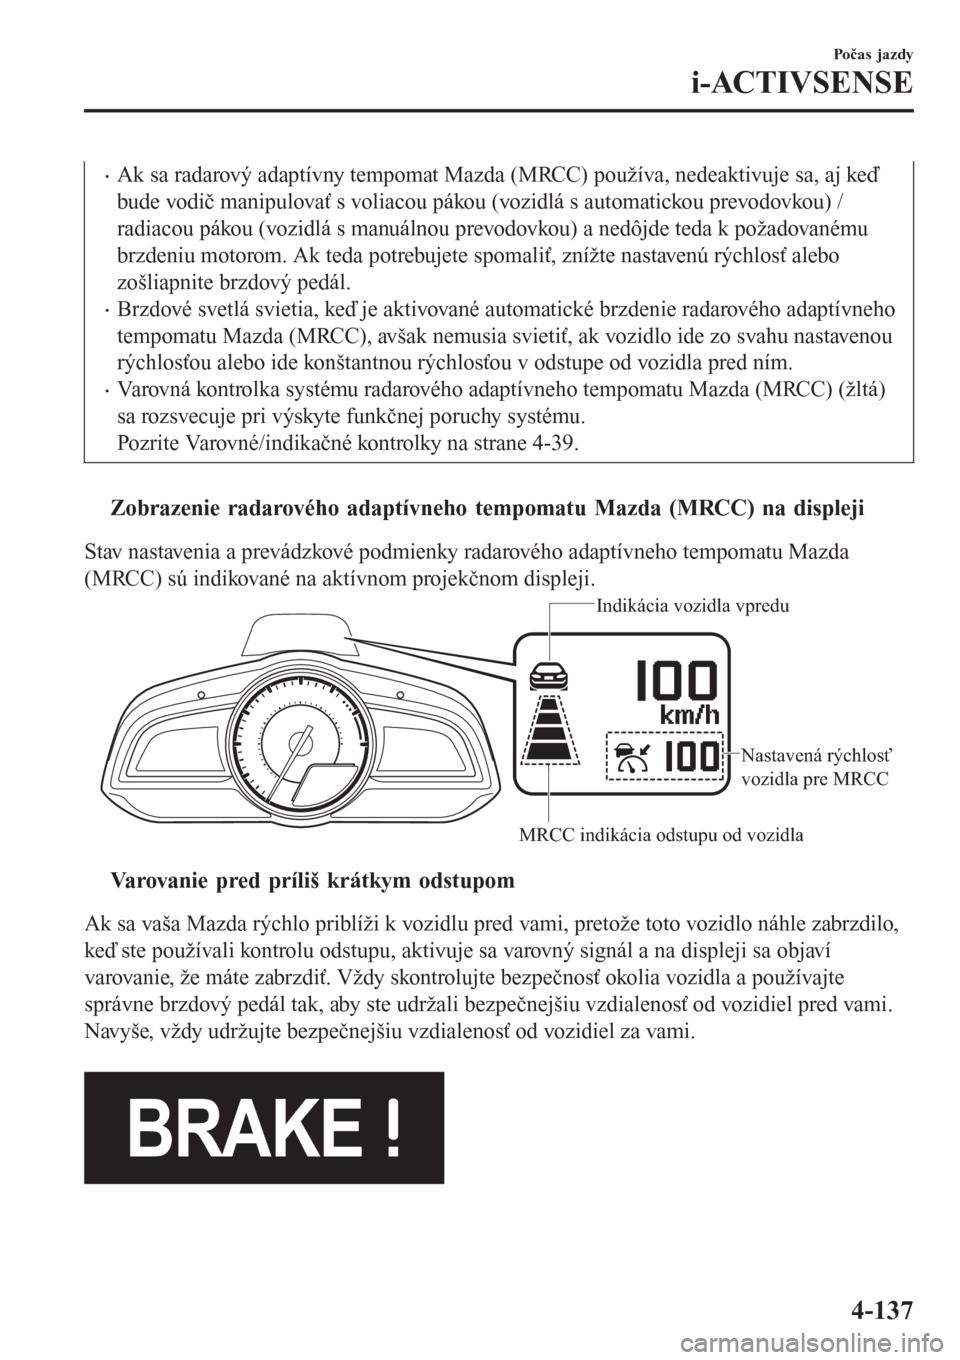 MAZDA MODEL CX-3 2015  Užívateľská príručka (in Slovak) •Ak sa radarový adaptívny tempomat Mazda (MRCC) používa, nedeaktivuje sa, aj keď
bude vodič manipulovať s voliacou pákou (vozidlá s automatickou prevodovkou) /
radiacou pákou (vozidlá s m